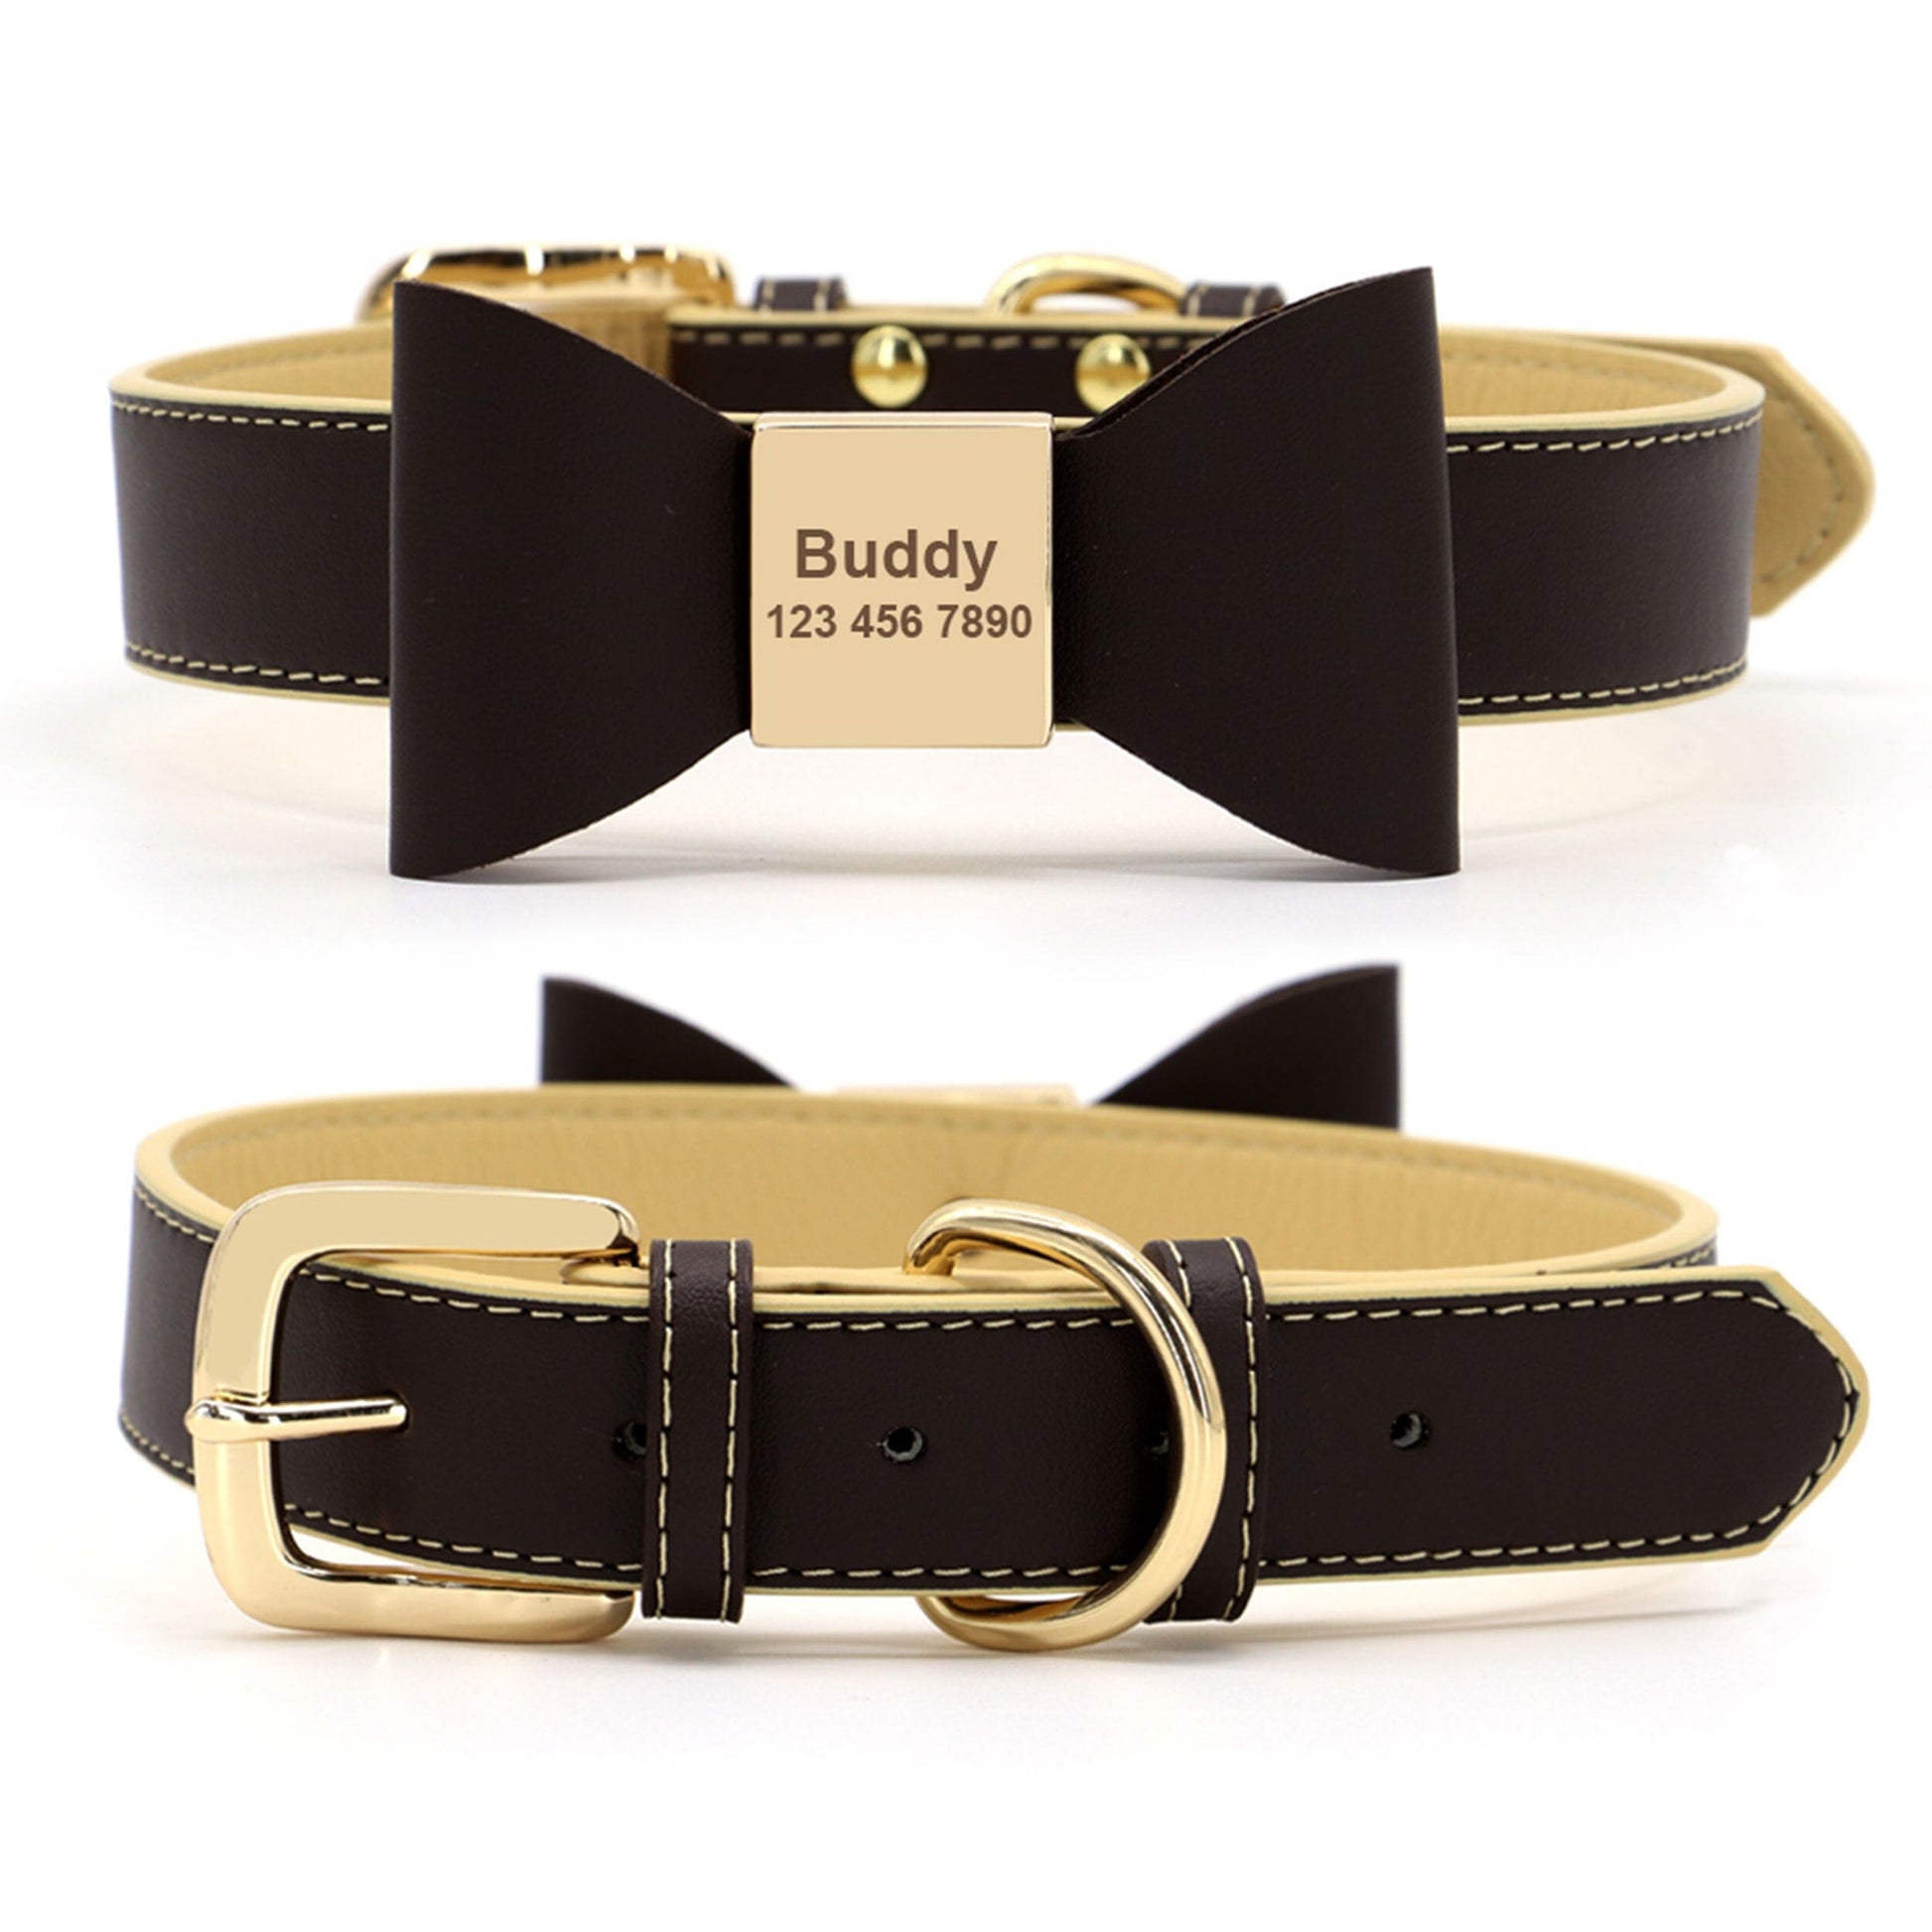 Premium Echtleder Hundehalsband mit Personalisierung | Bowknot Halsband Mein Shop Dunkelbraun/Beige XS 